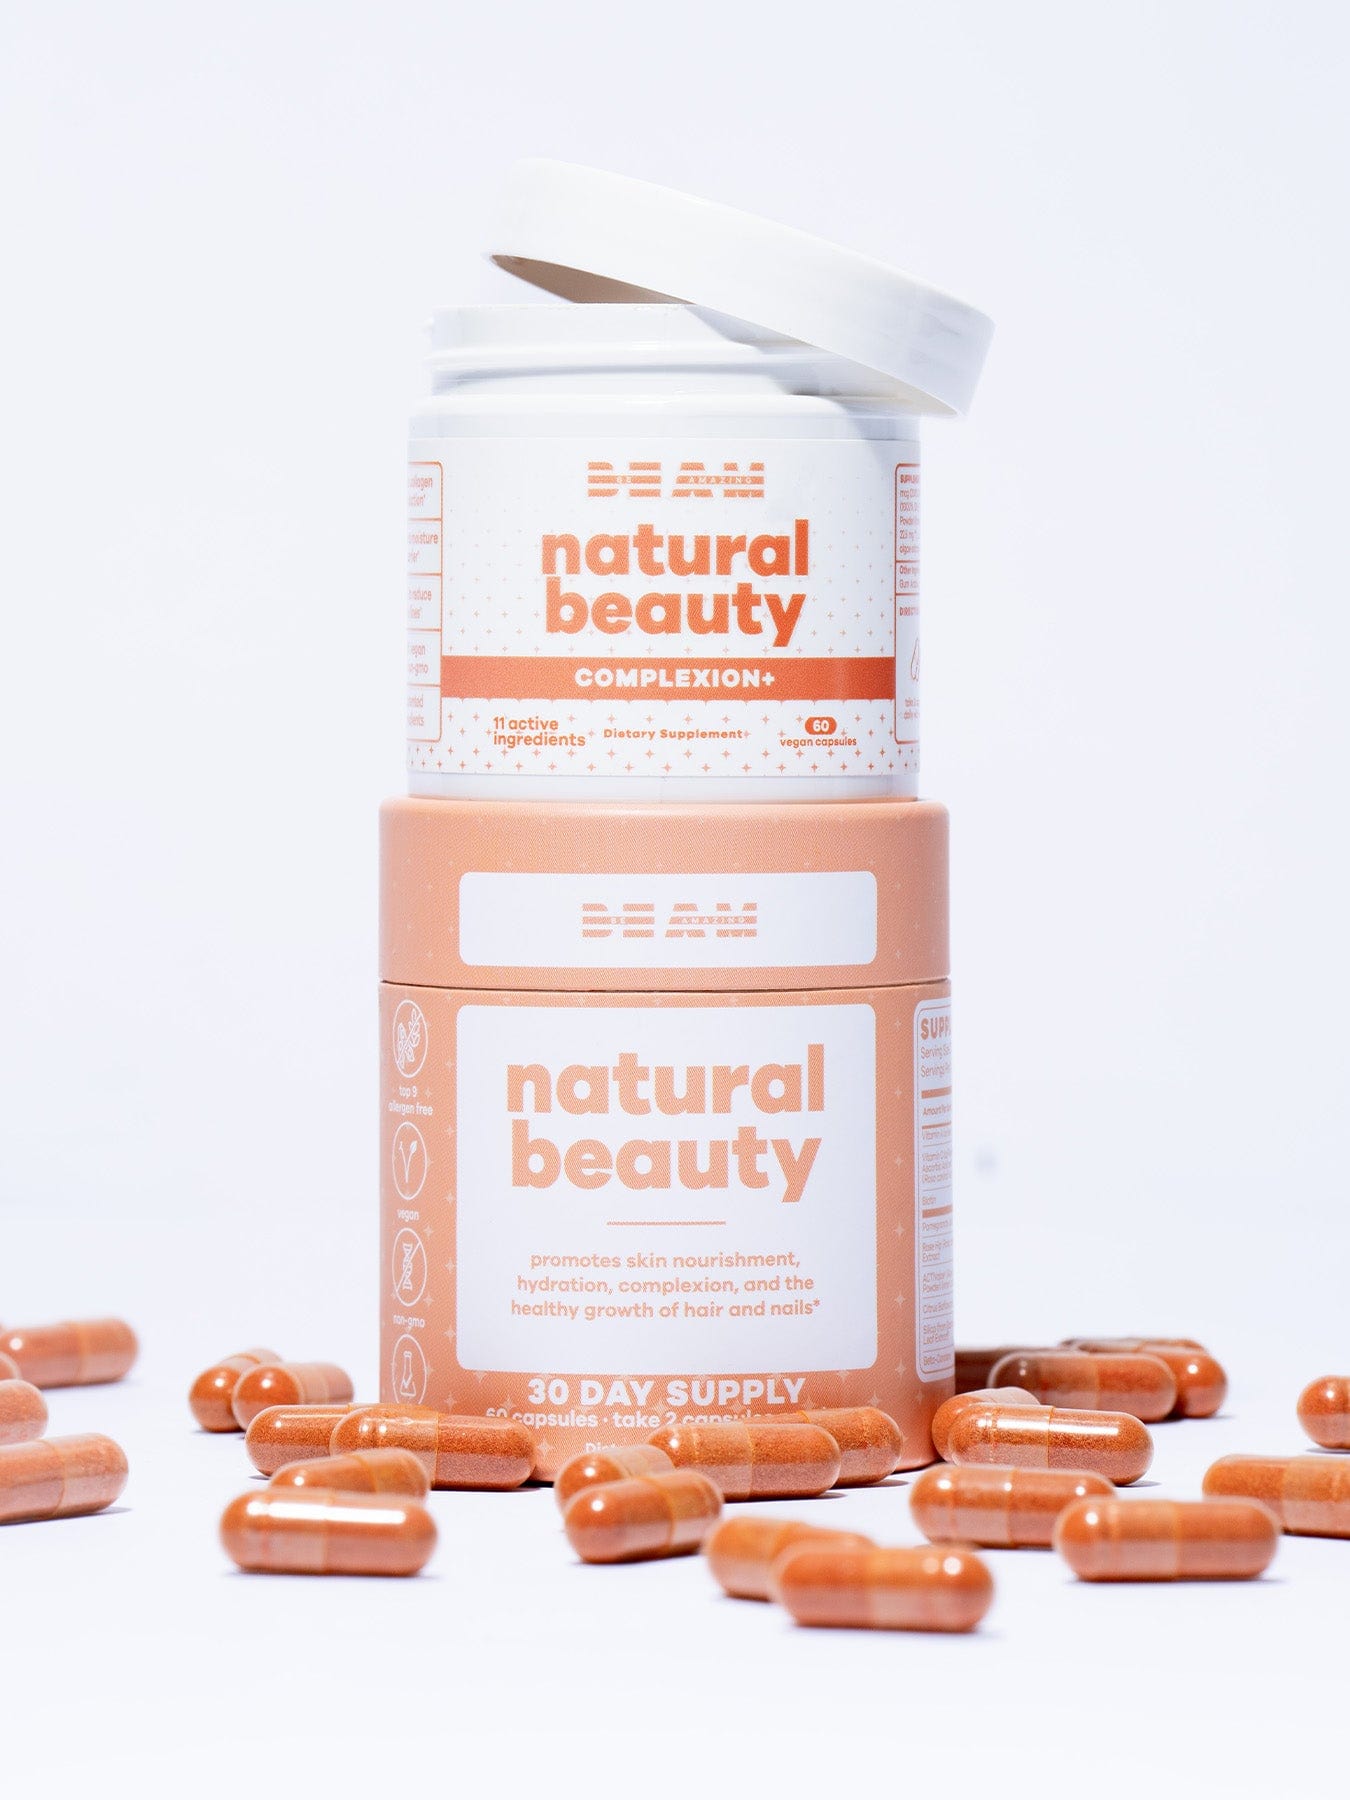 Natural beauty supplement